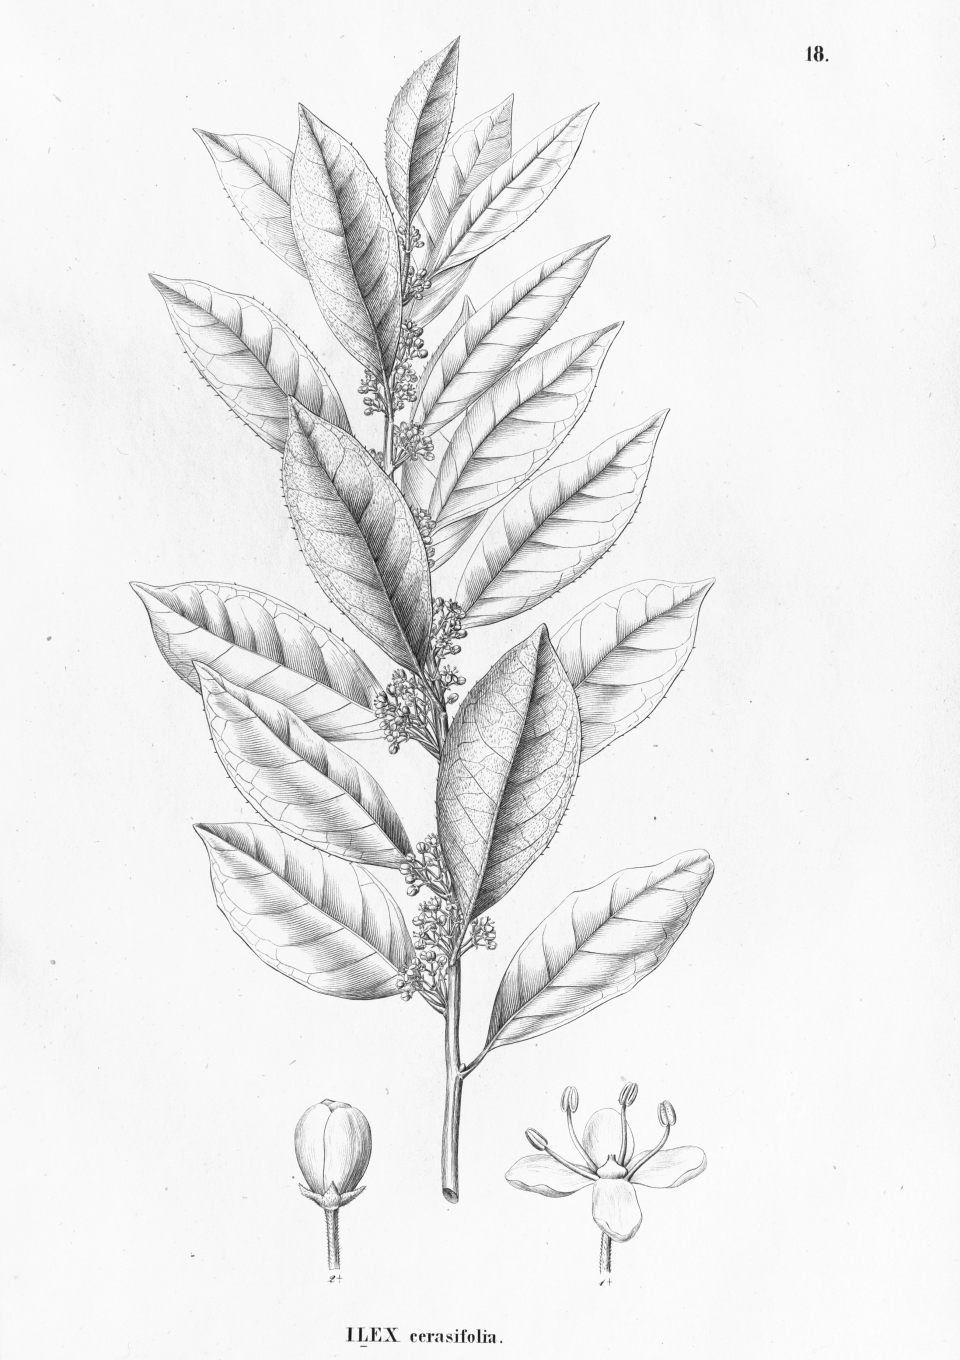 Ilex cerasifolia